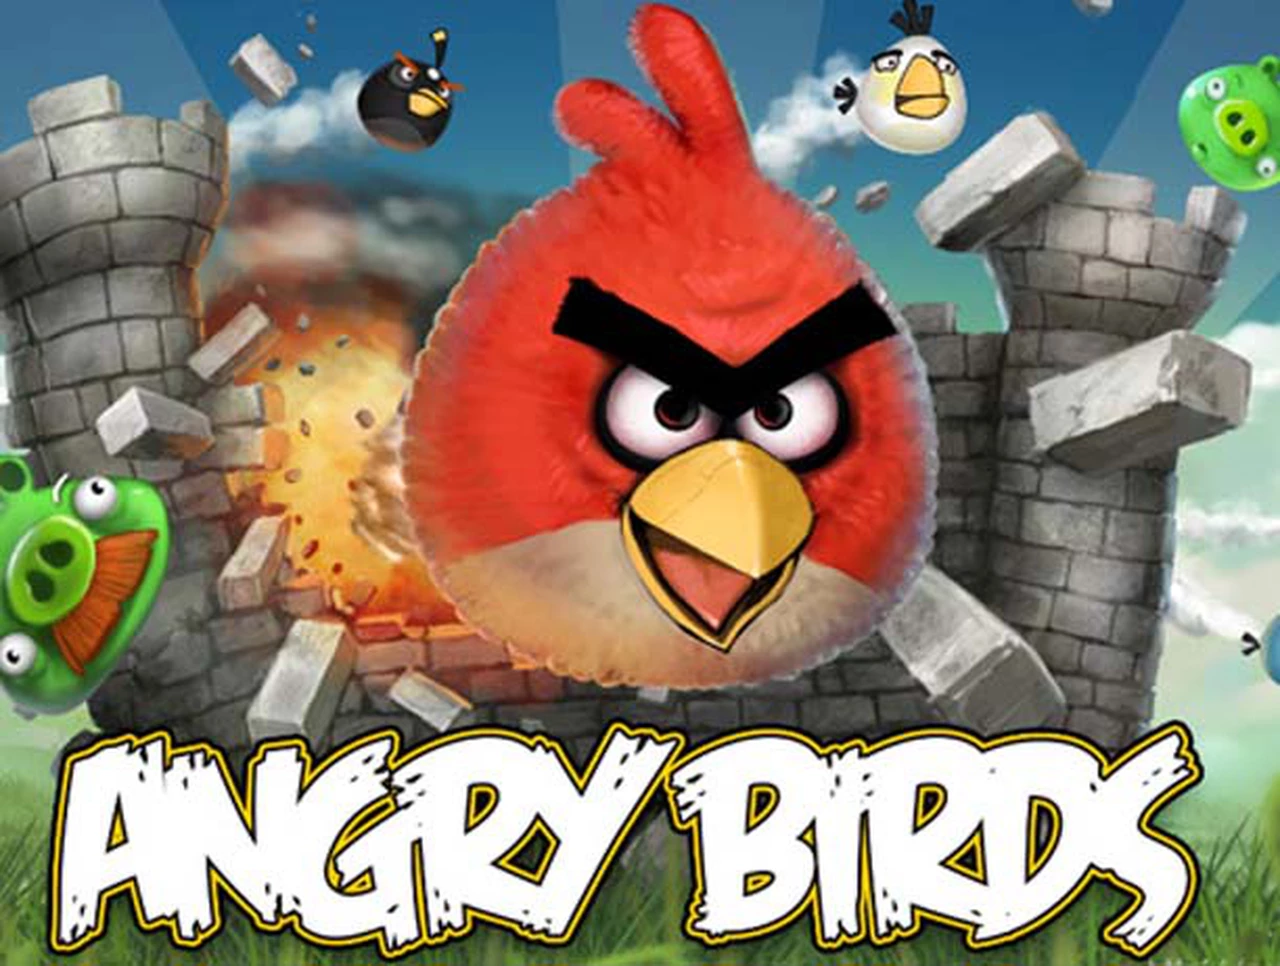 Tras duplicar sus ventas en el semestre, los Angry Birds decidieron cotizar en Bolsa